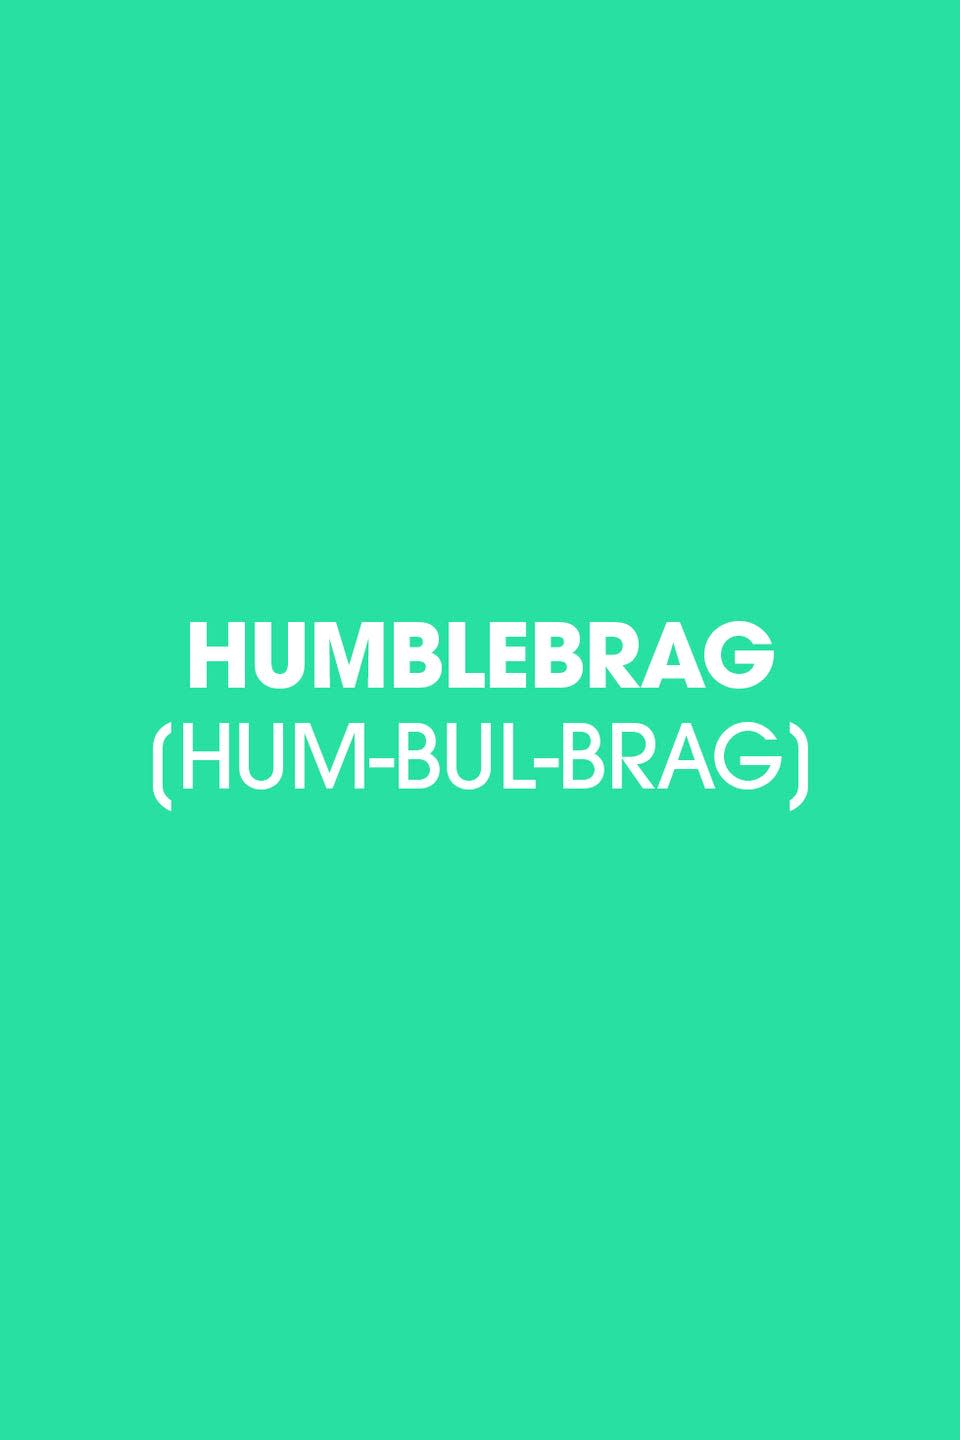 2011: Humblebrag